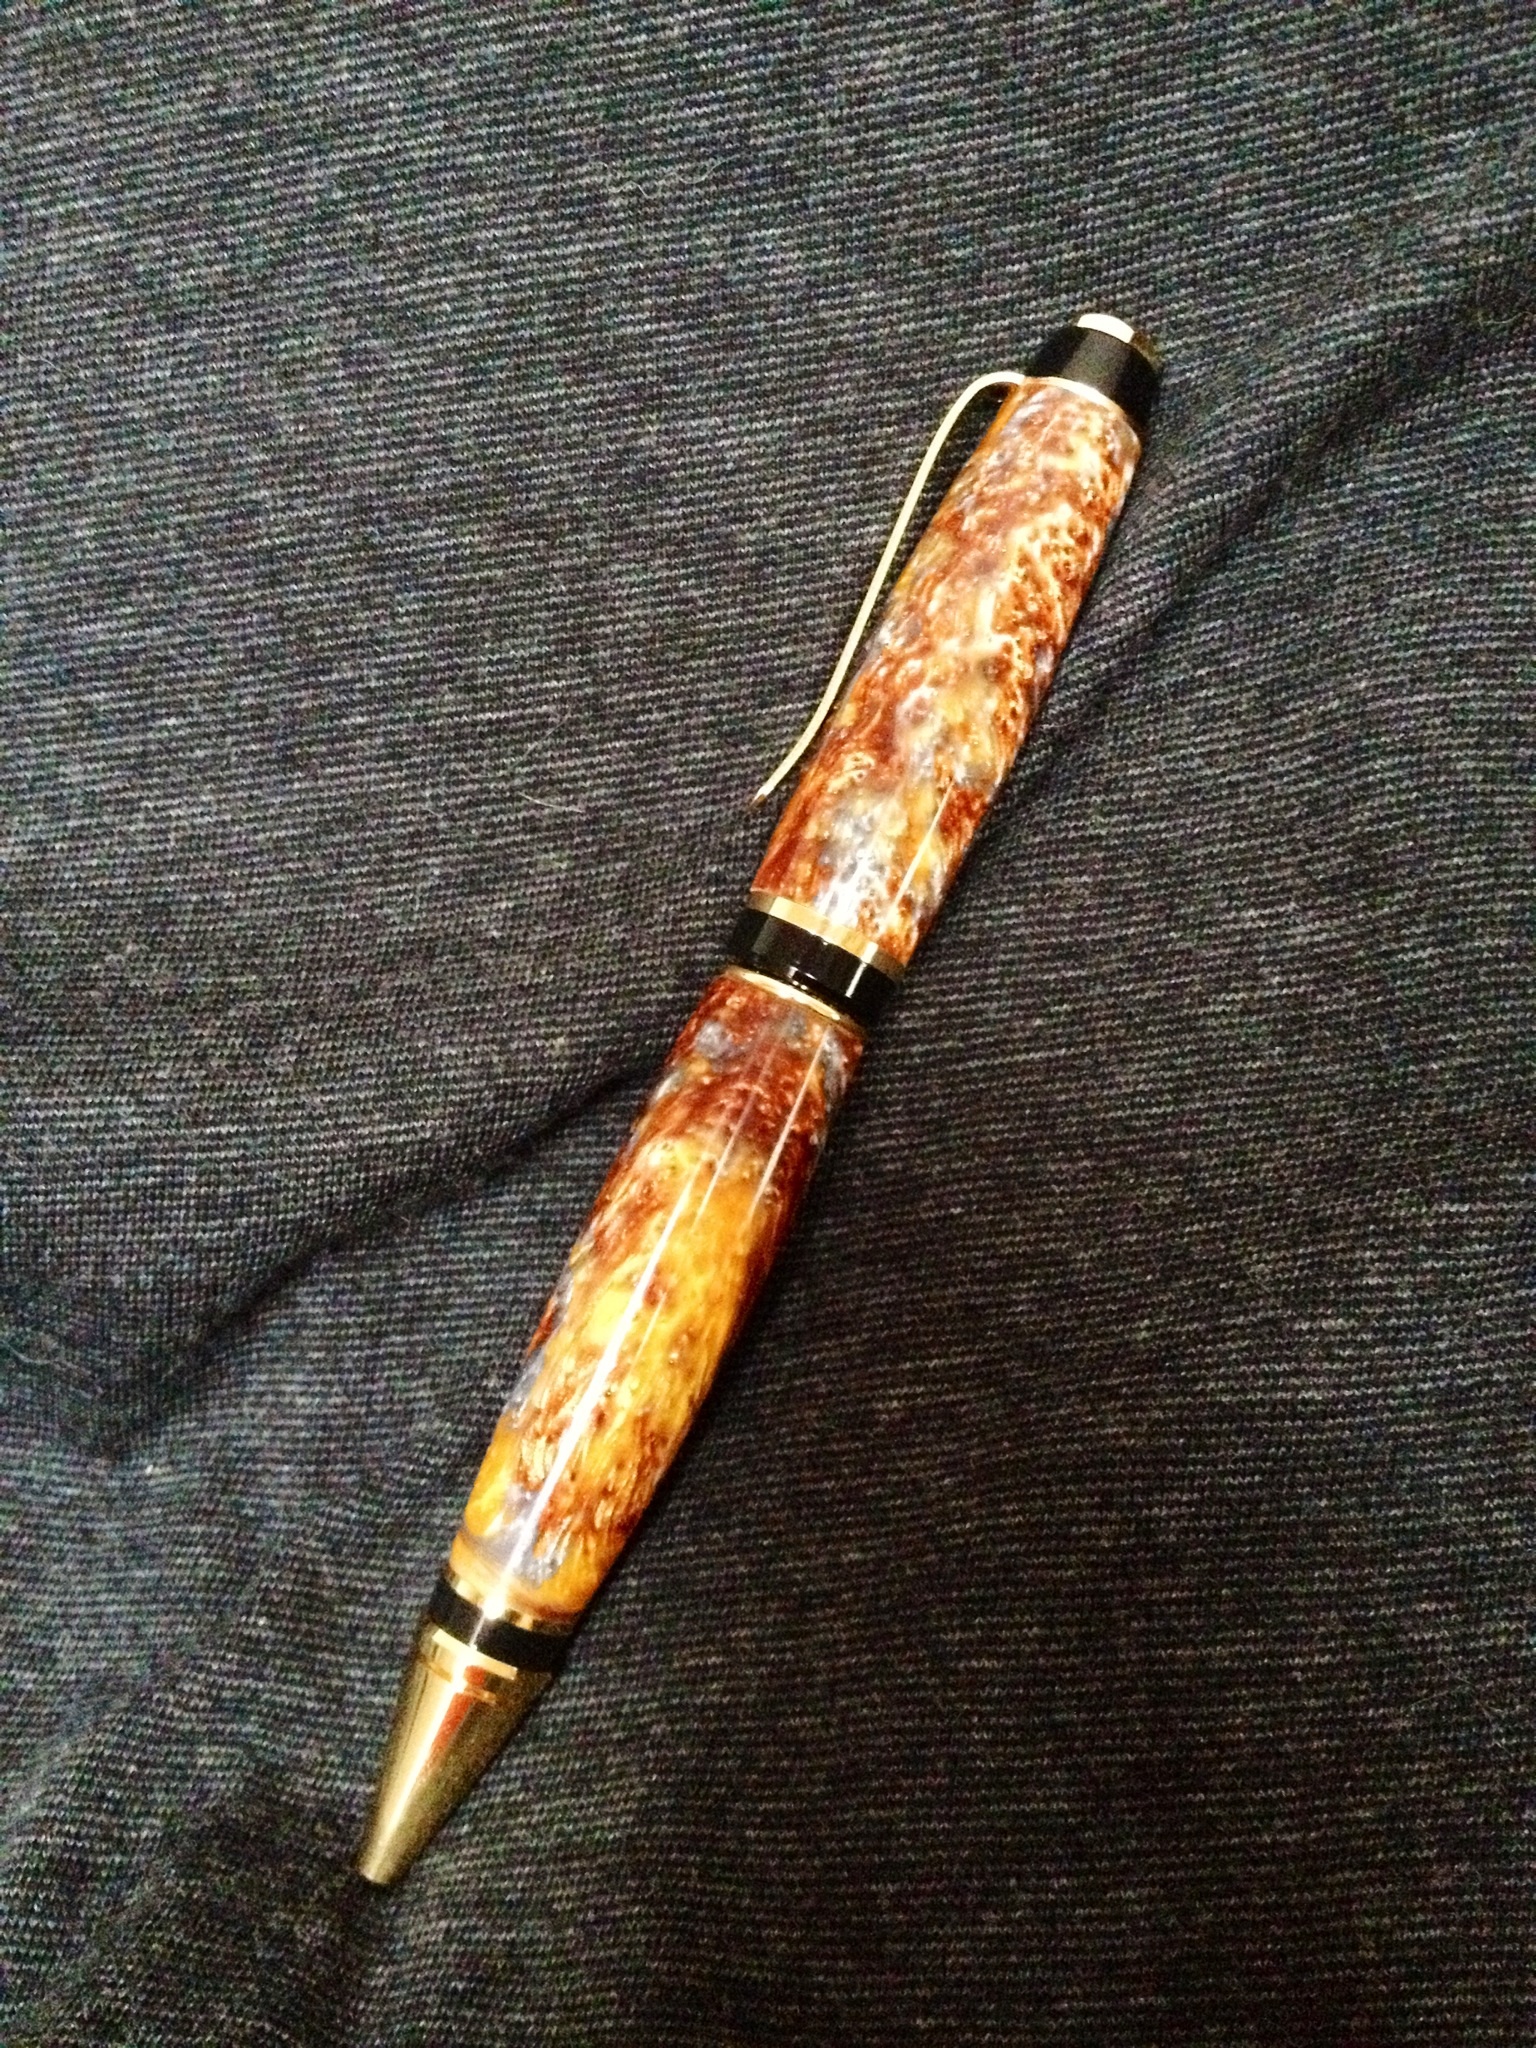 Acrylester cigar pen